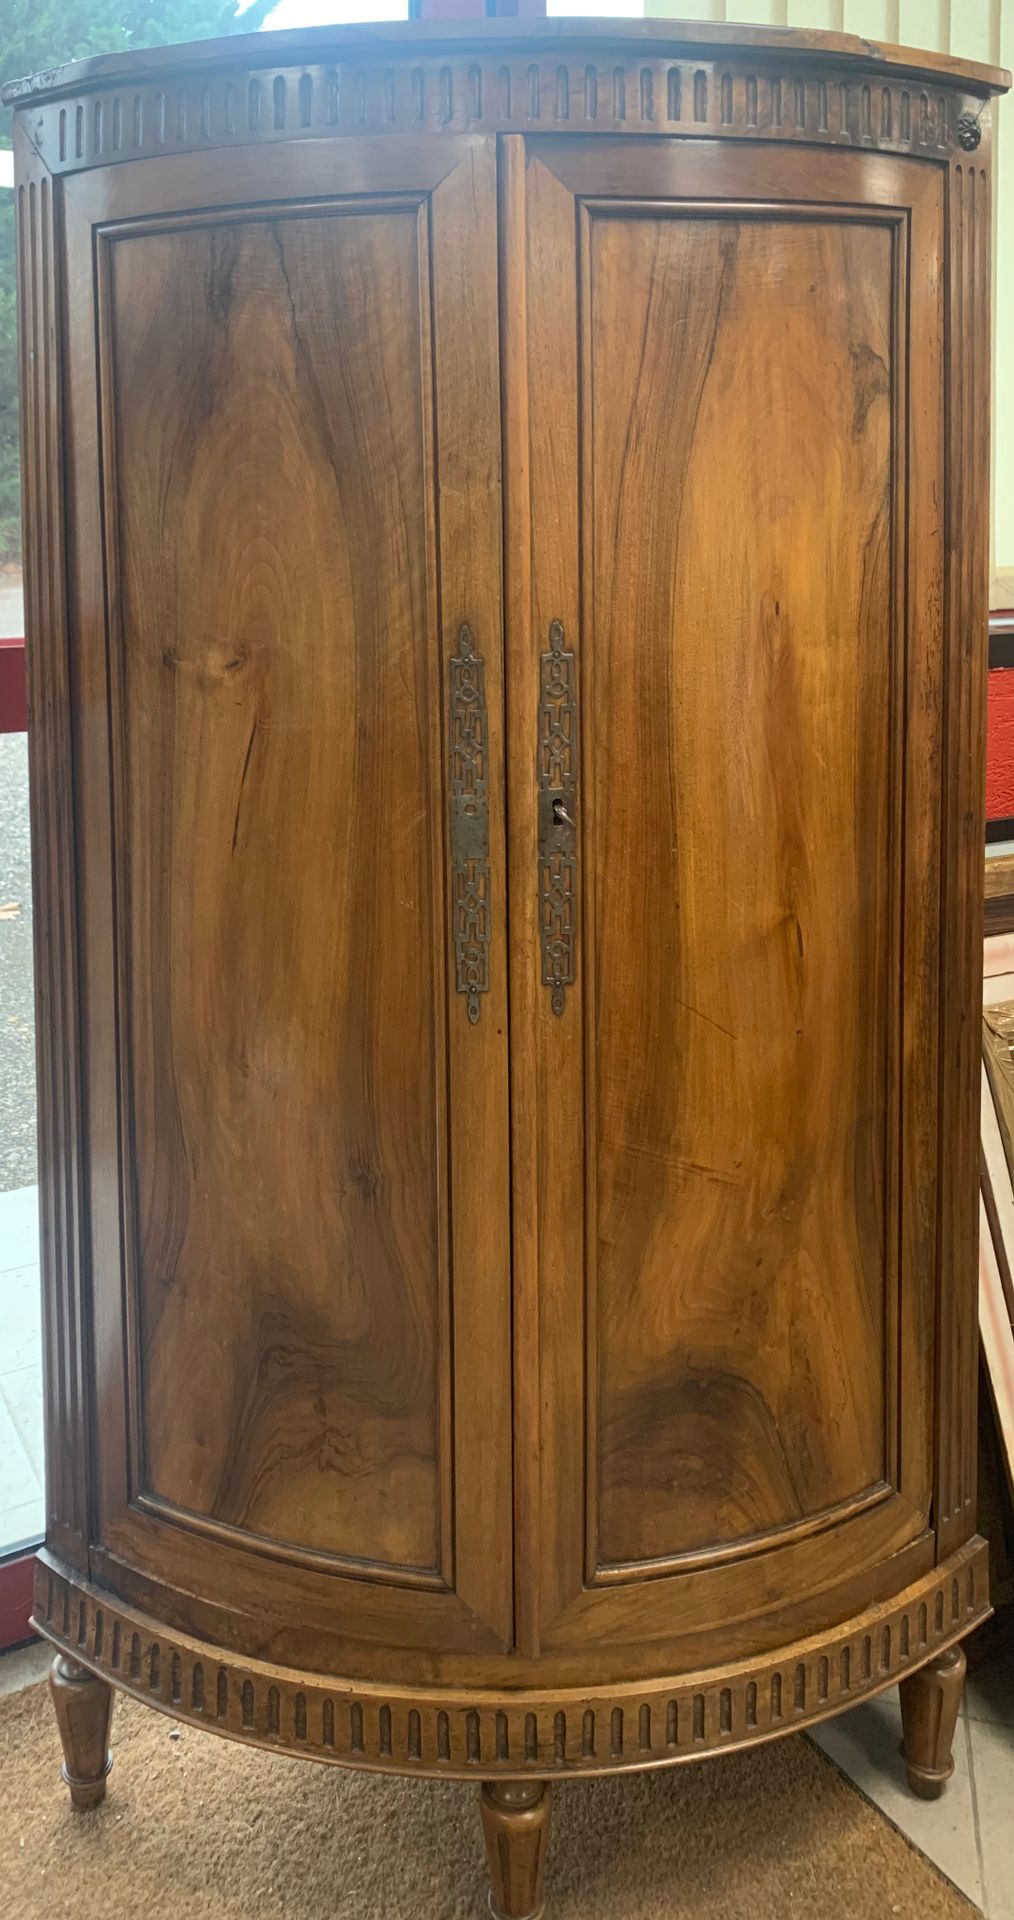 Null 
一个大型的胡桃木转角柜，有一个木制的顶部，是路易十六时期的地区作品。

高：163厘米

D: 65厘米

D: 100厘米